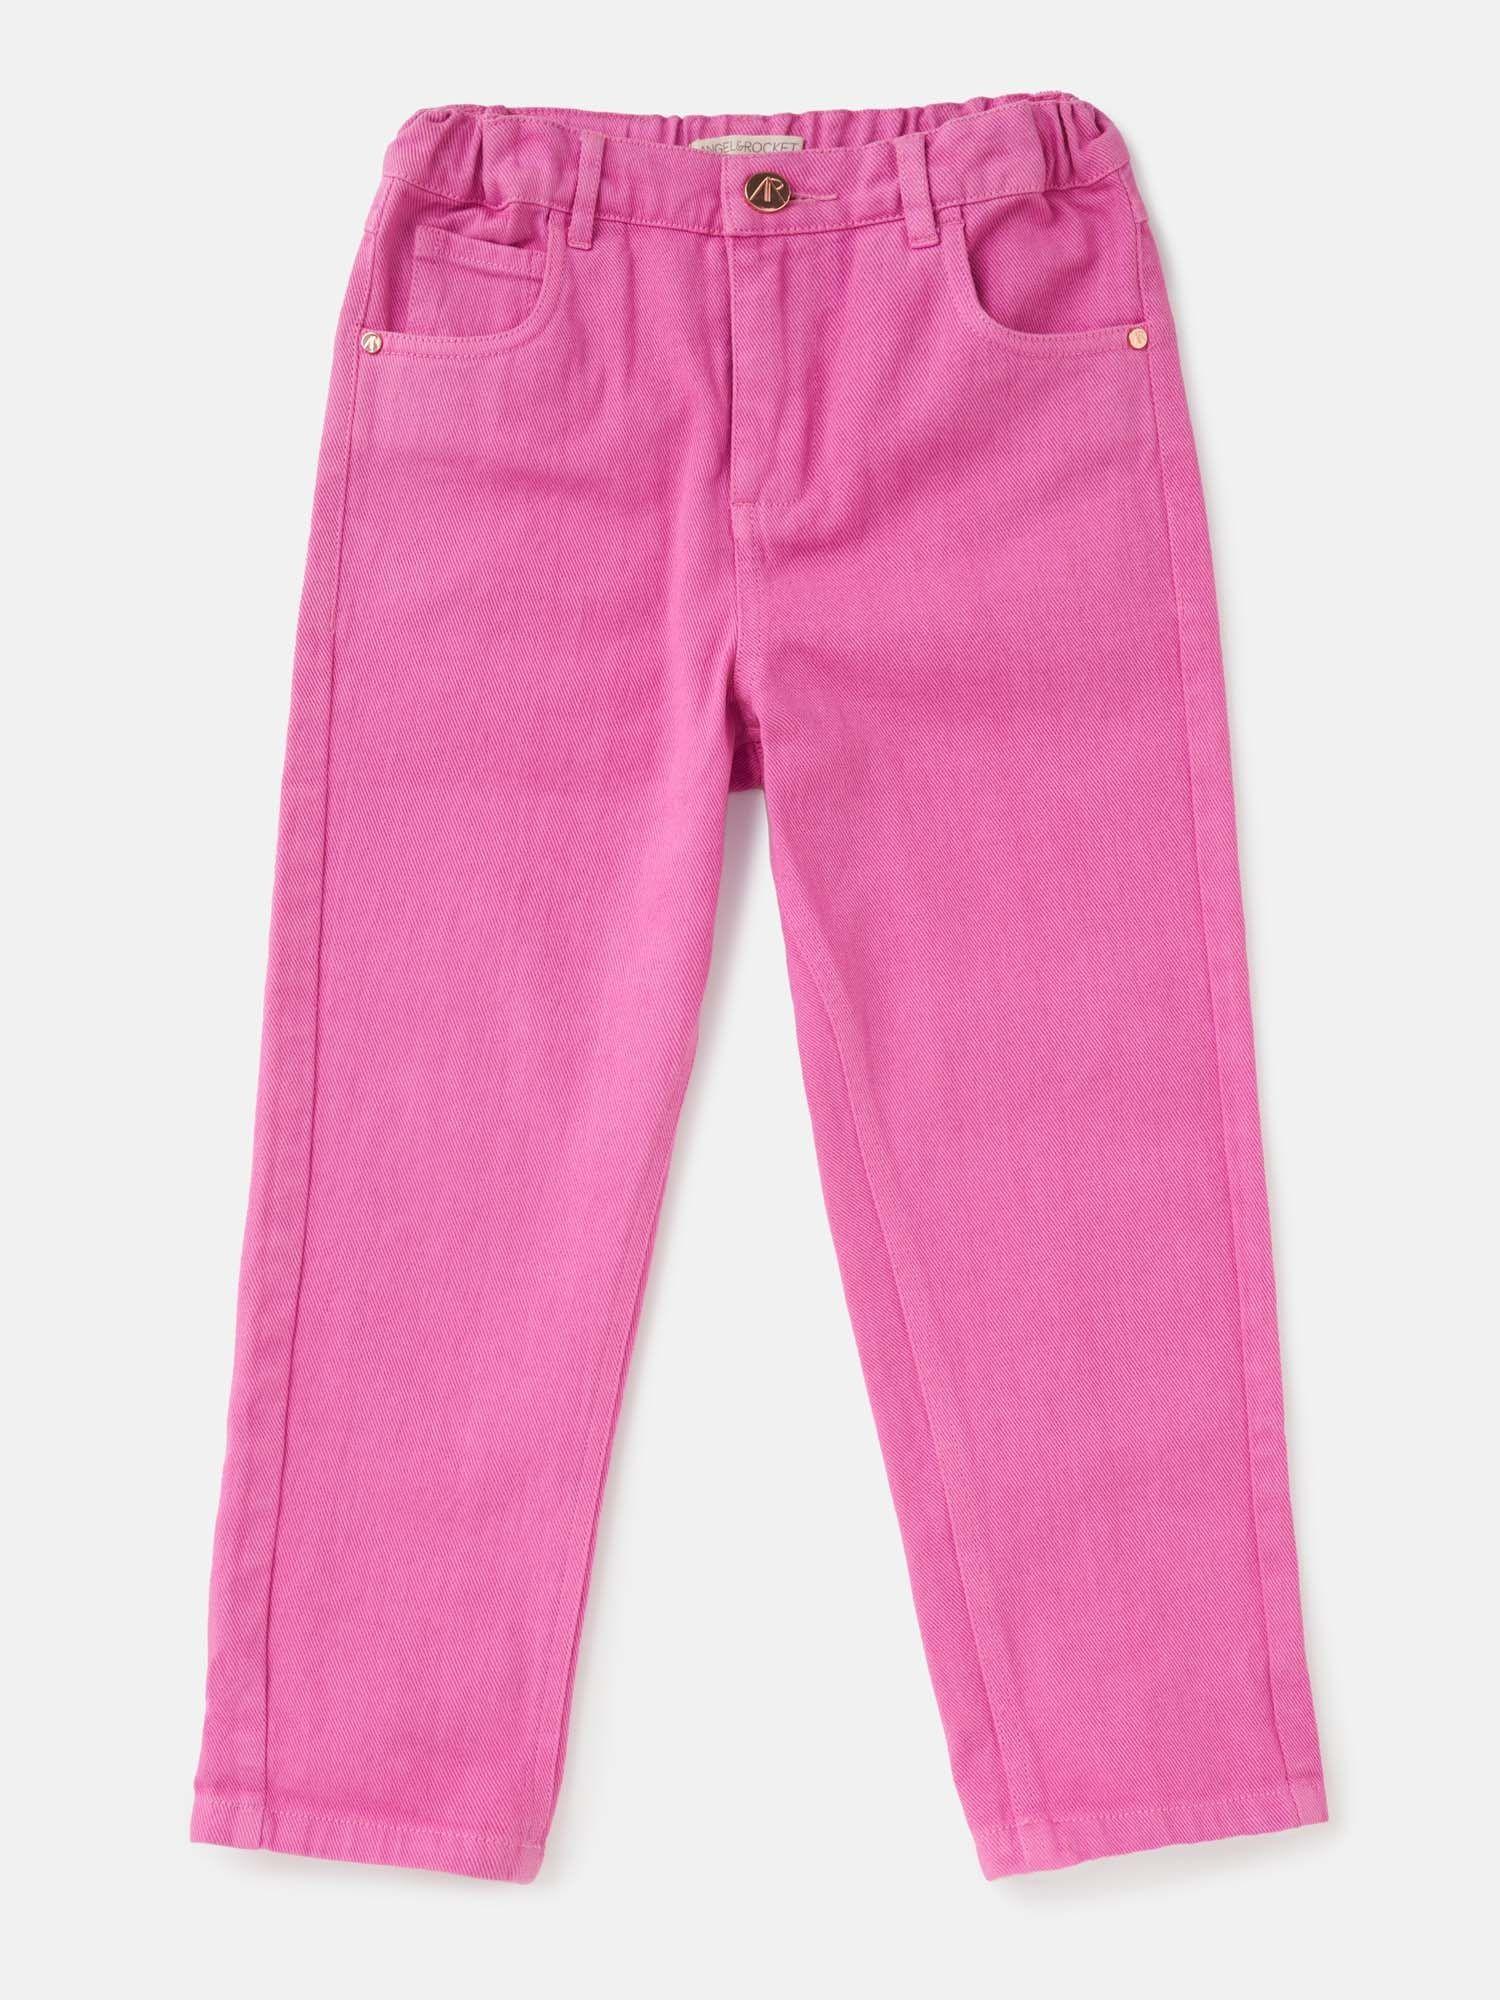 pink color denim jeans